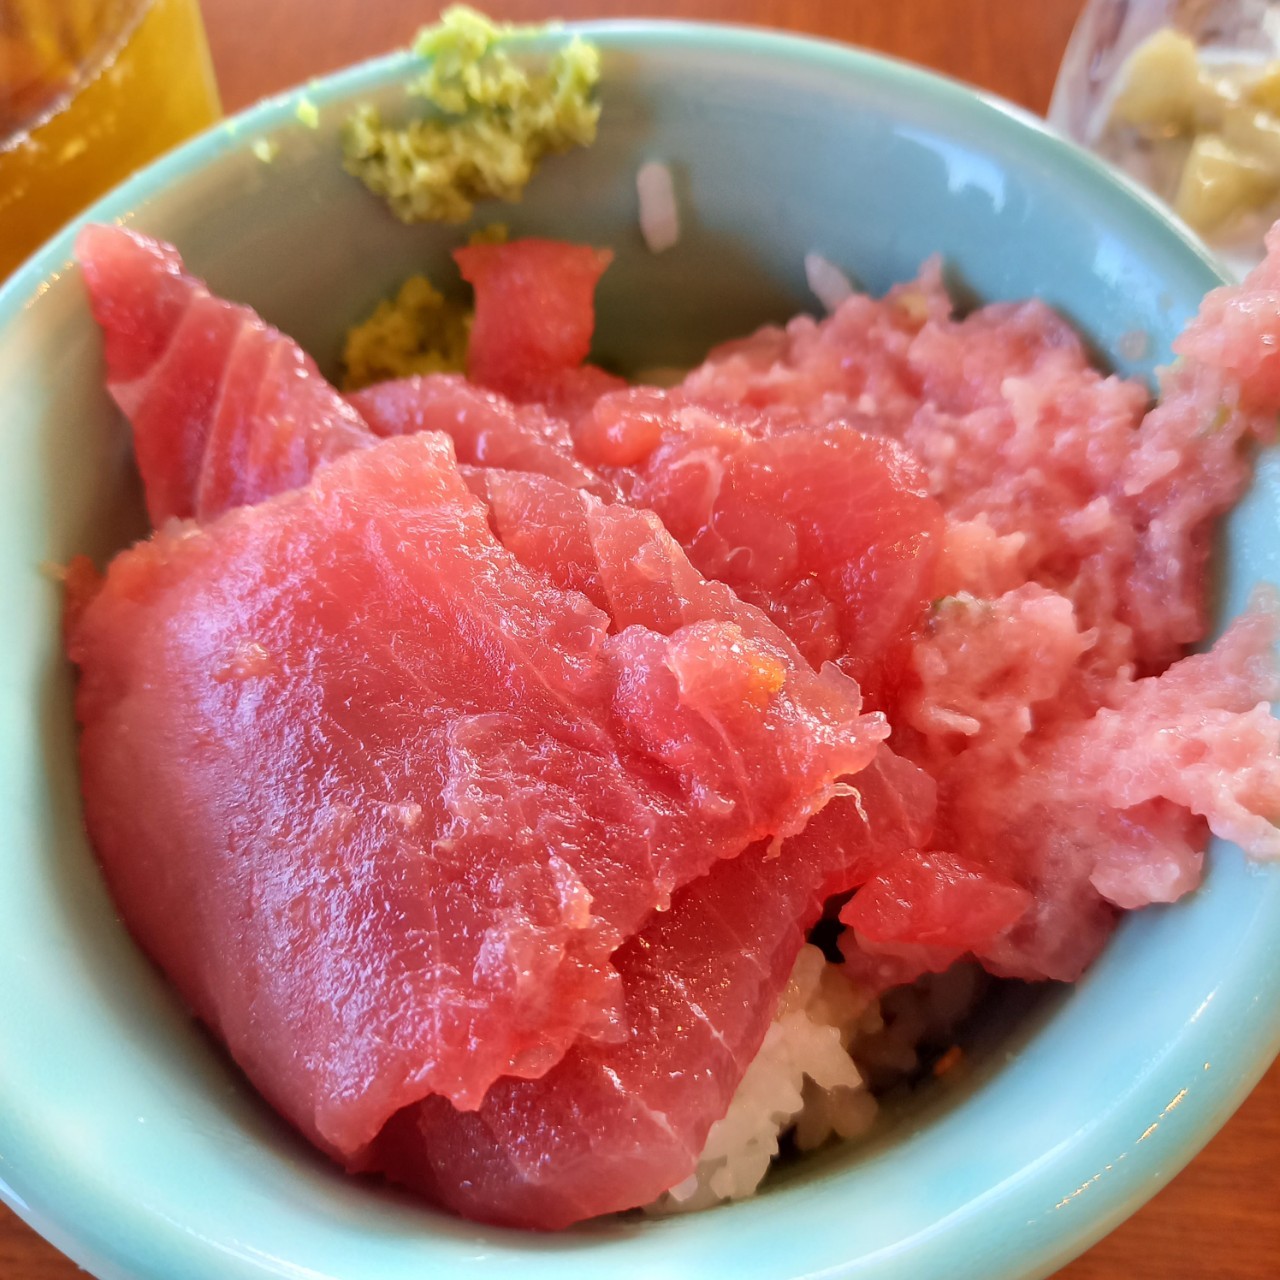 HIYORIオーシャンリゾート沖縄のブログ・朝食ビュッフェ